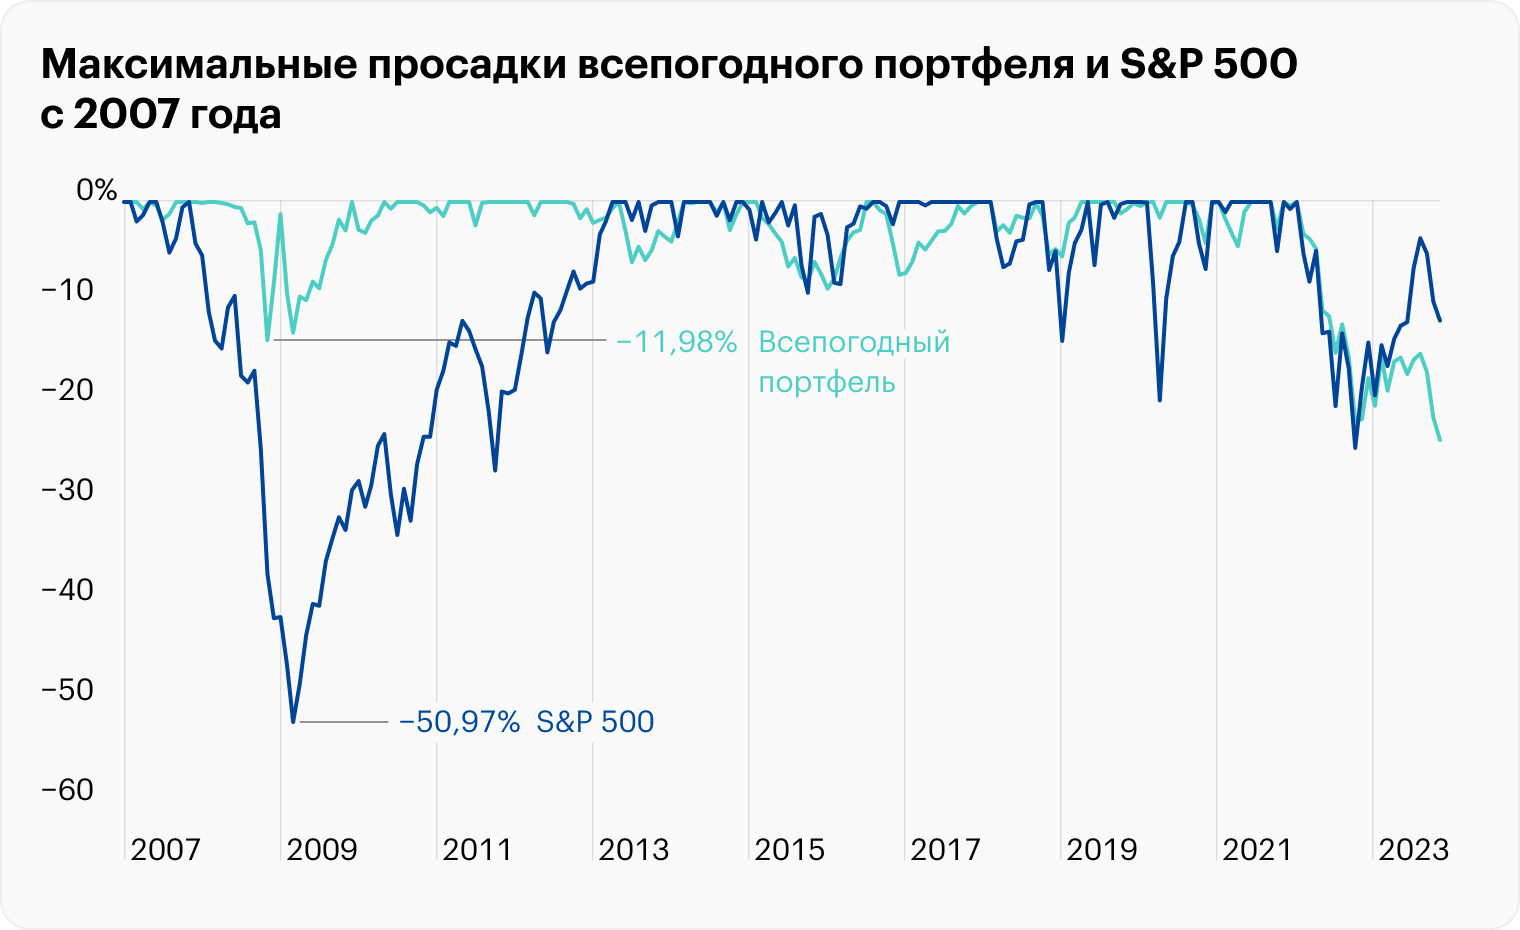 График максимальных просадок обоих портфелей: в 2022 году всепогодный портфель не выполнил свою функцию и проседал так же сильно, как S&P 500